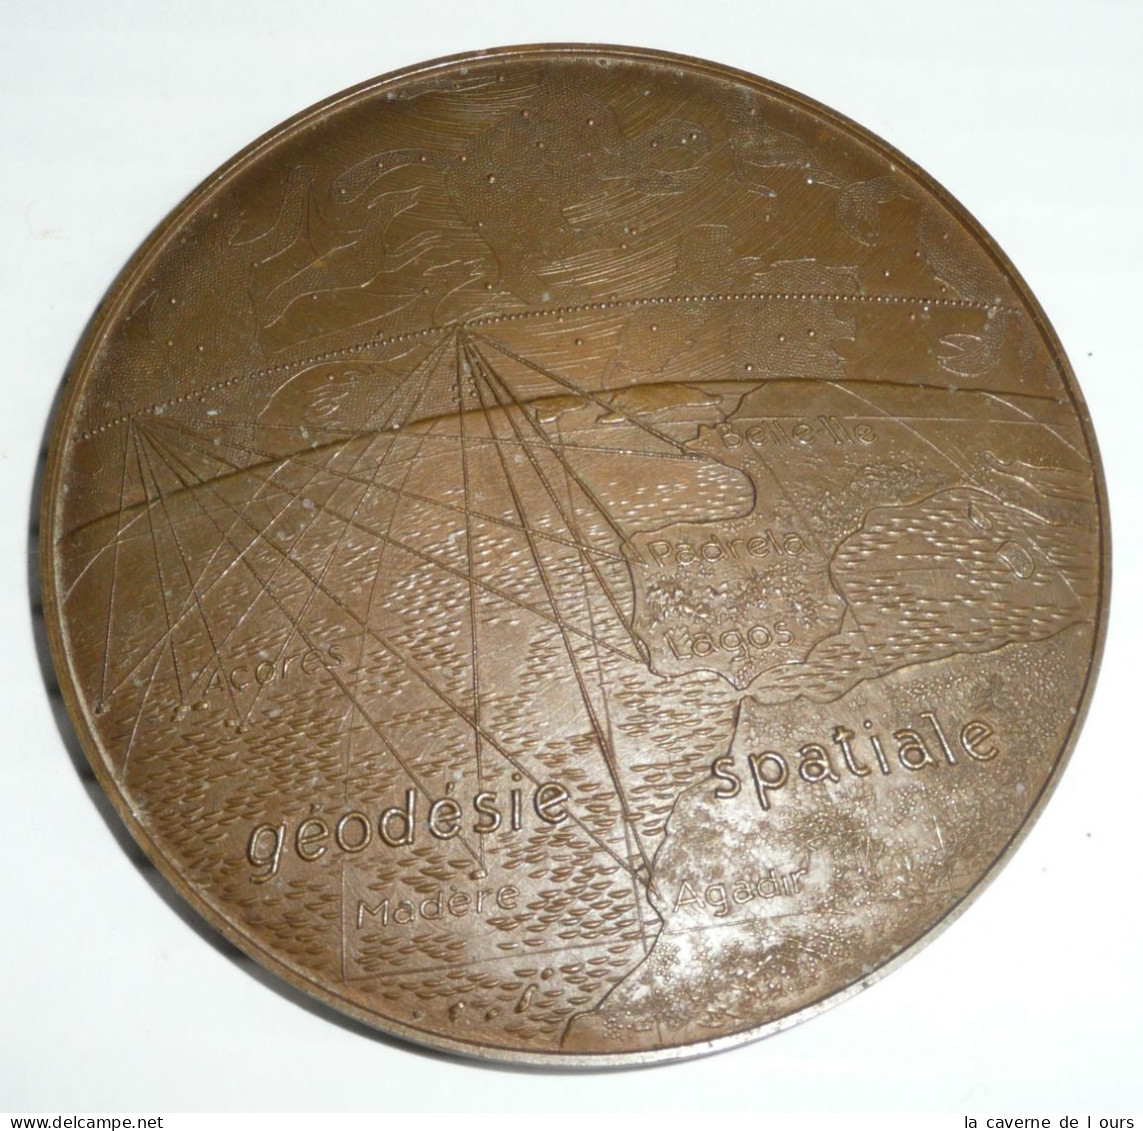 Rare Grossse Médaille De Table En Bronze 1968 IGN Cartographie Géodésie Spatiale - Professionals/Firms